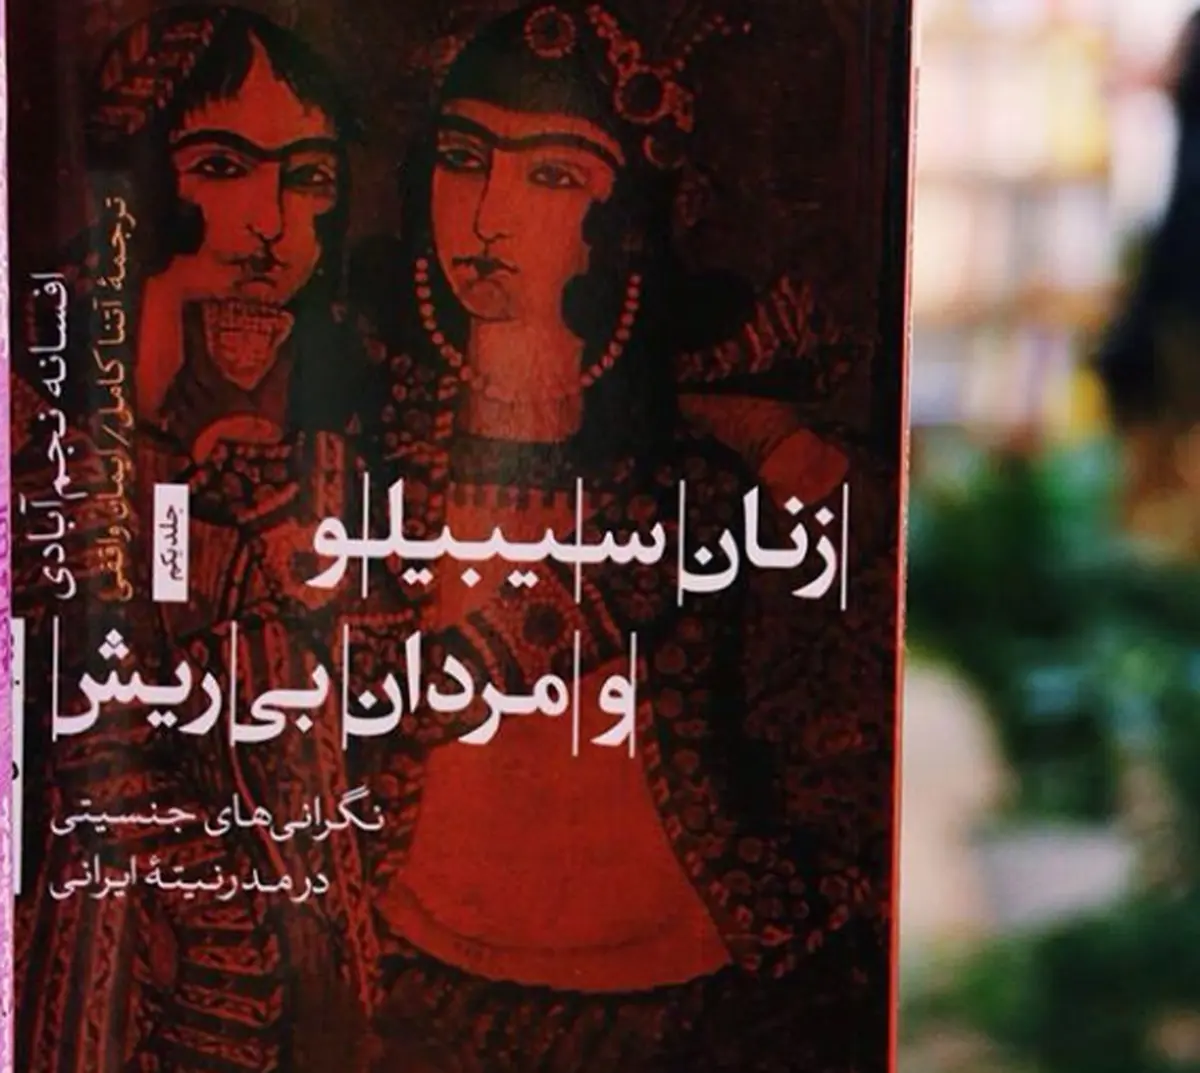 مدرنیته ایرانی از منظر جنسیت